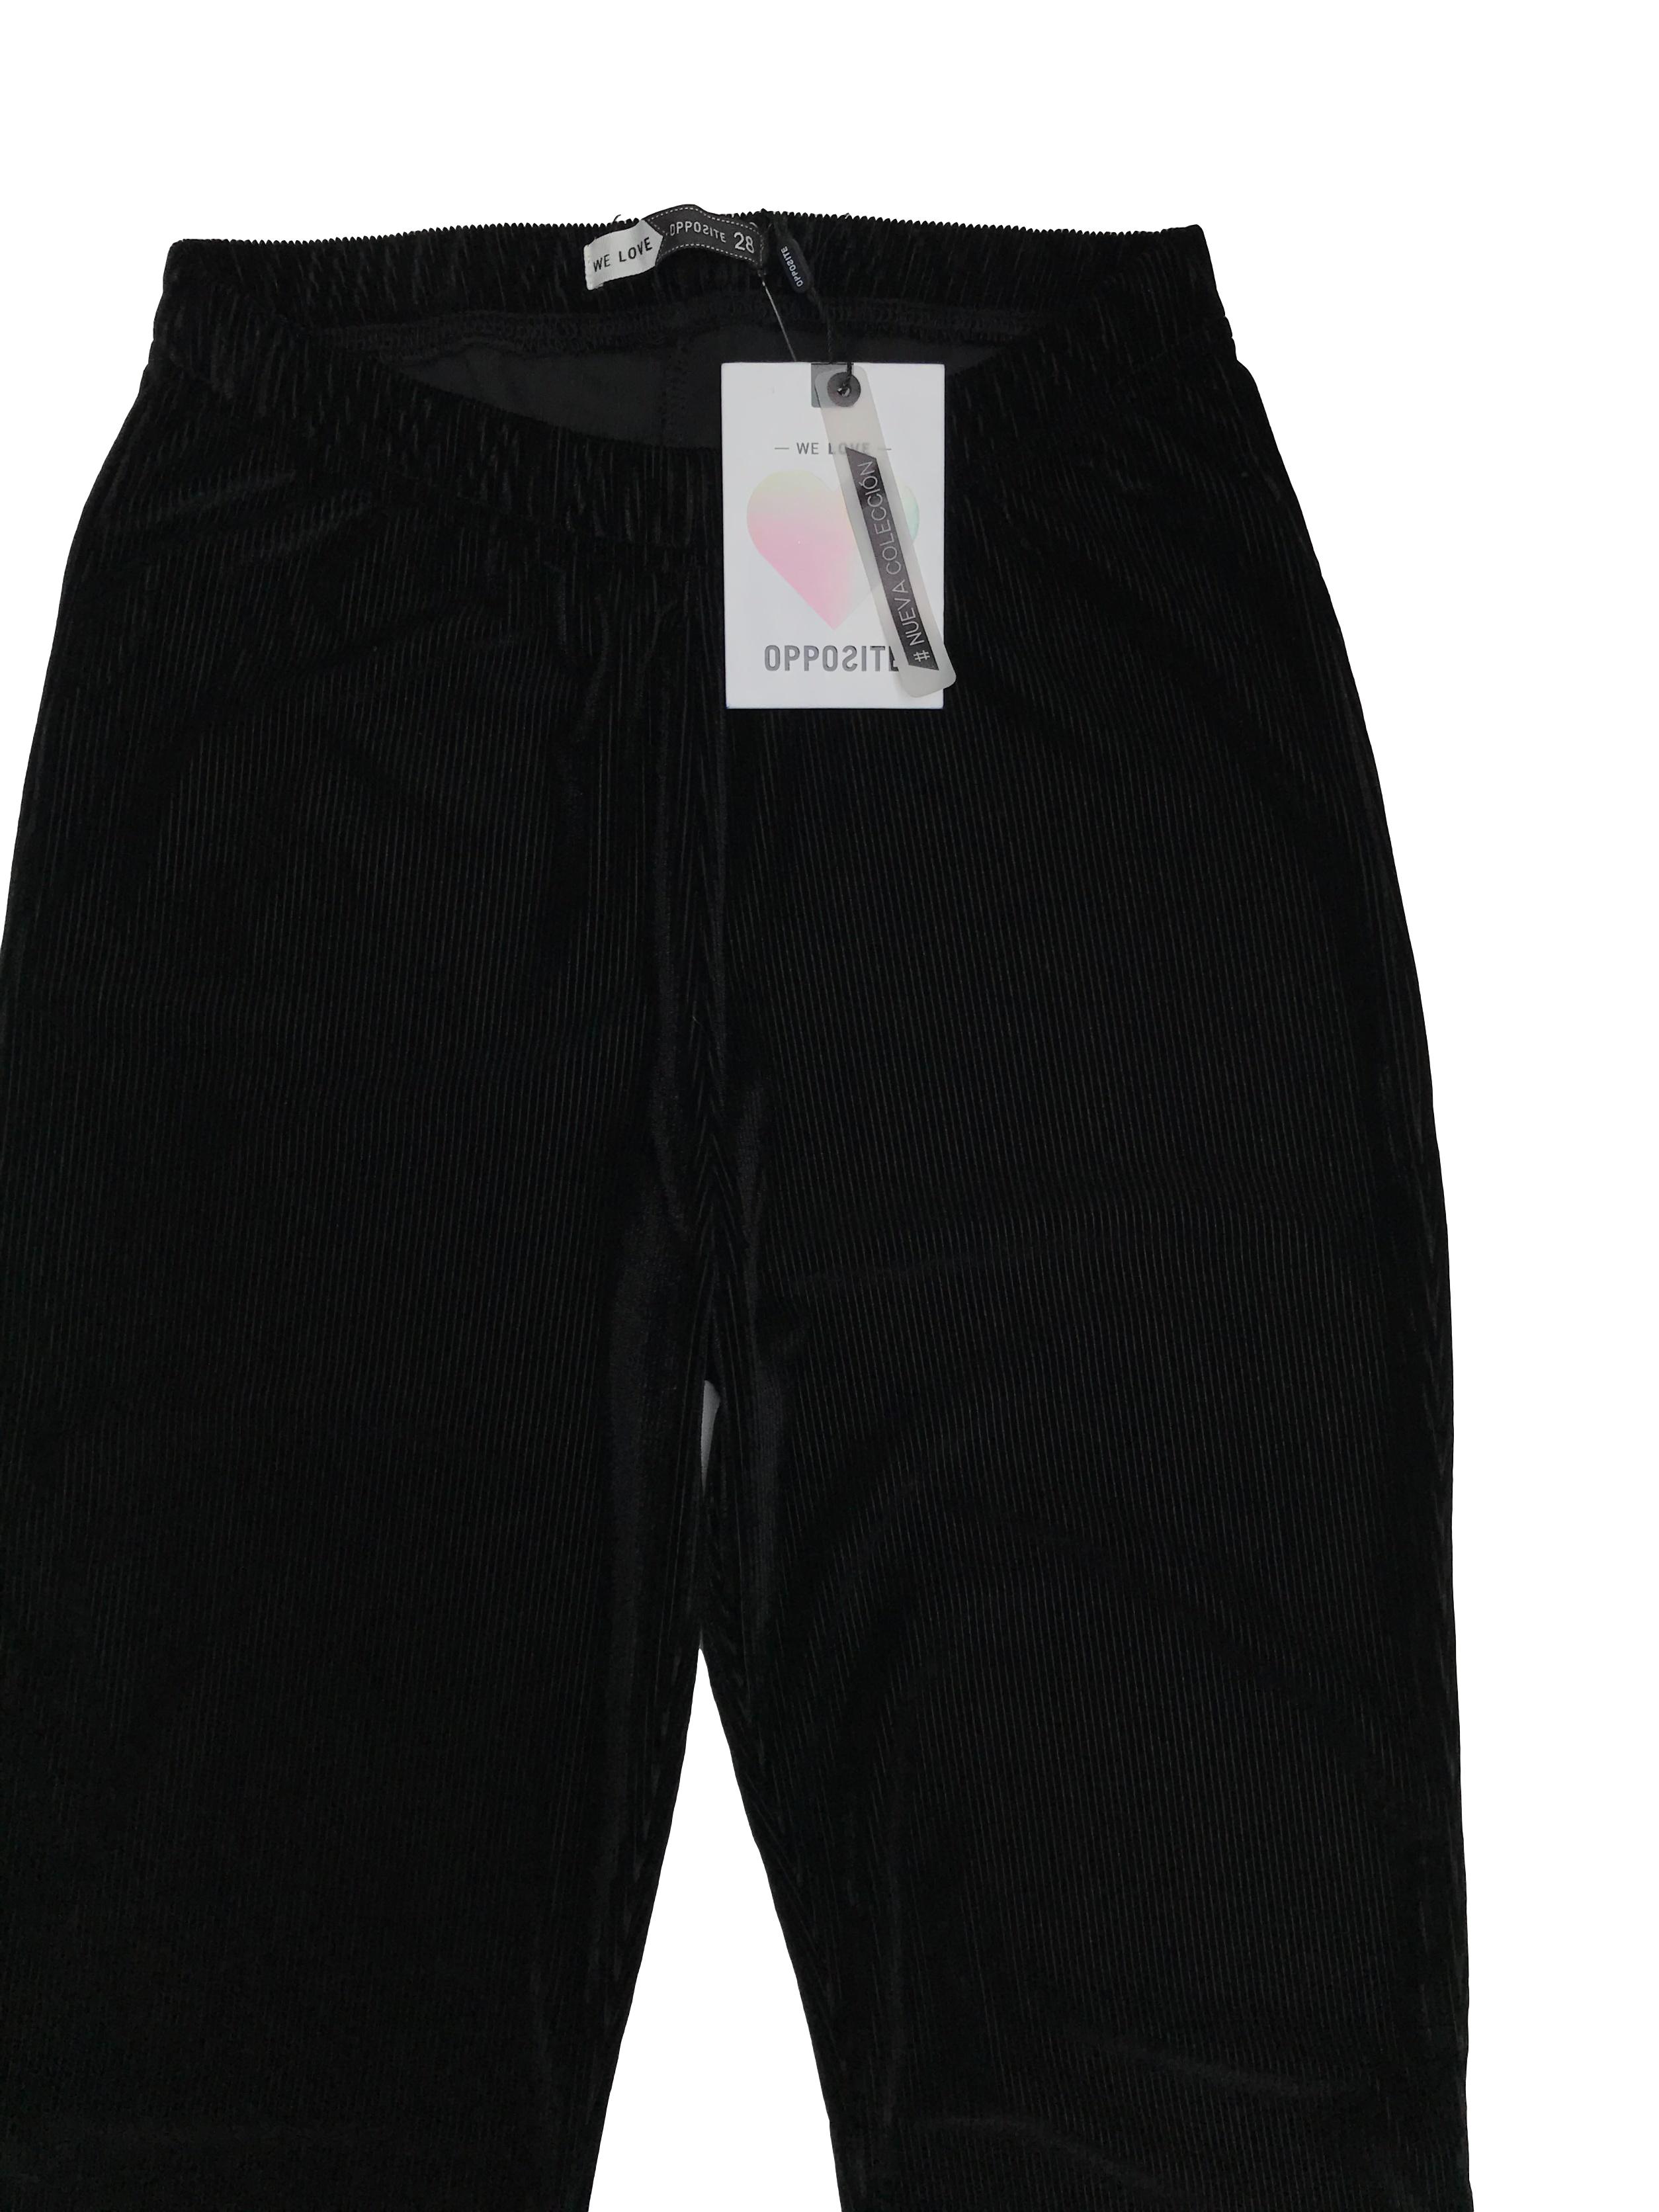 Pantalón tipo corduroy satinado negro, a la cintura, pegado al cuerpo con basta campana. Cintura 60cm (sin estirar). Nuevo con etiqueta, precio original S/ 89.9